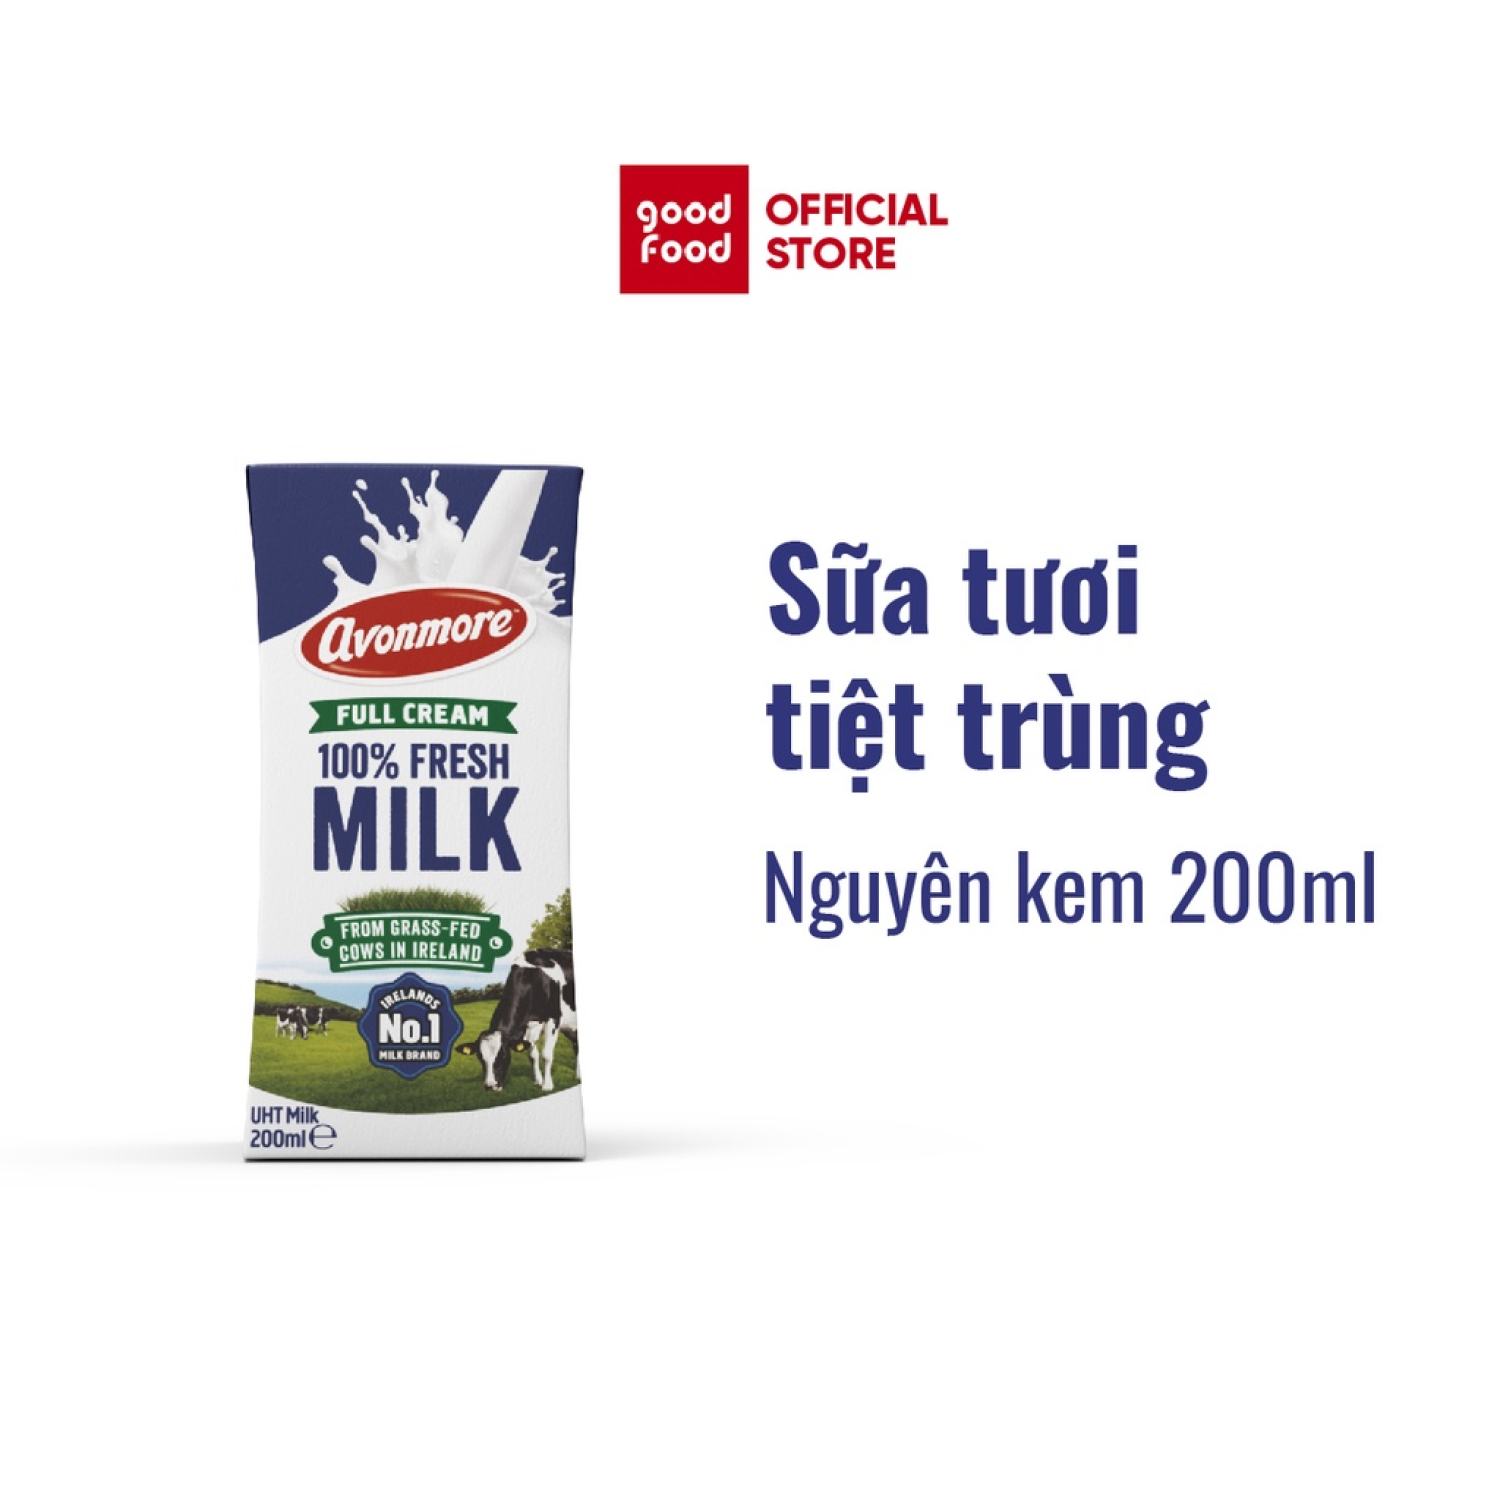 Sữa tươi tiệt trùng Avonmore nguyên kem 200ml - 1 hộp